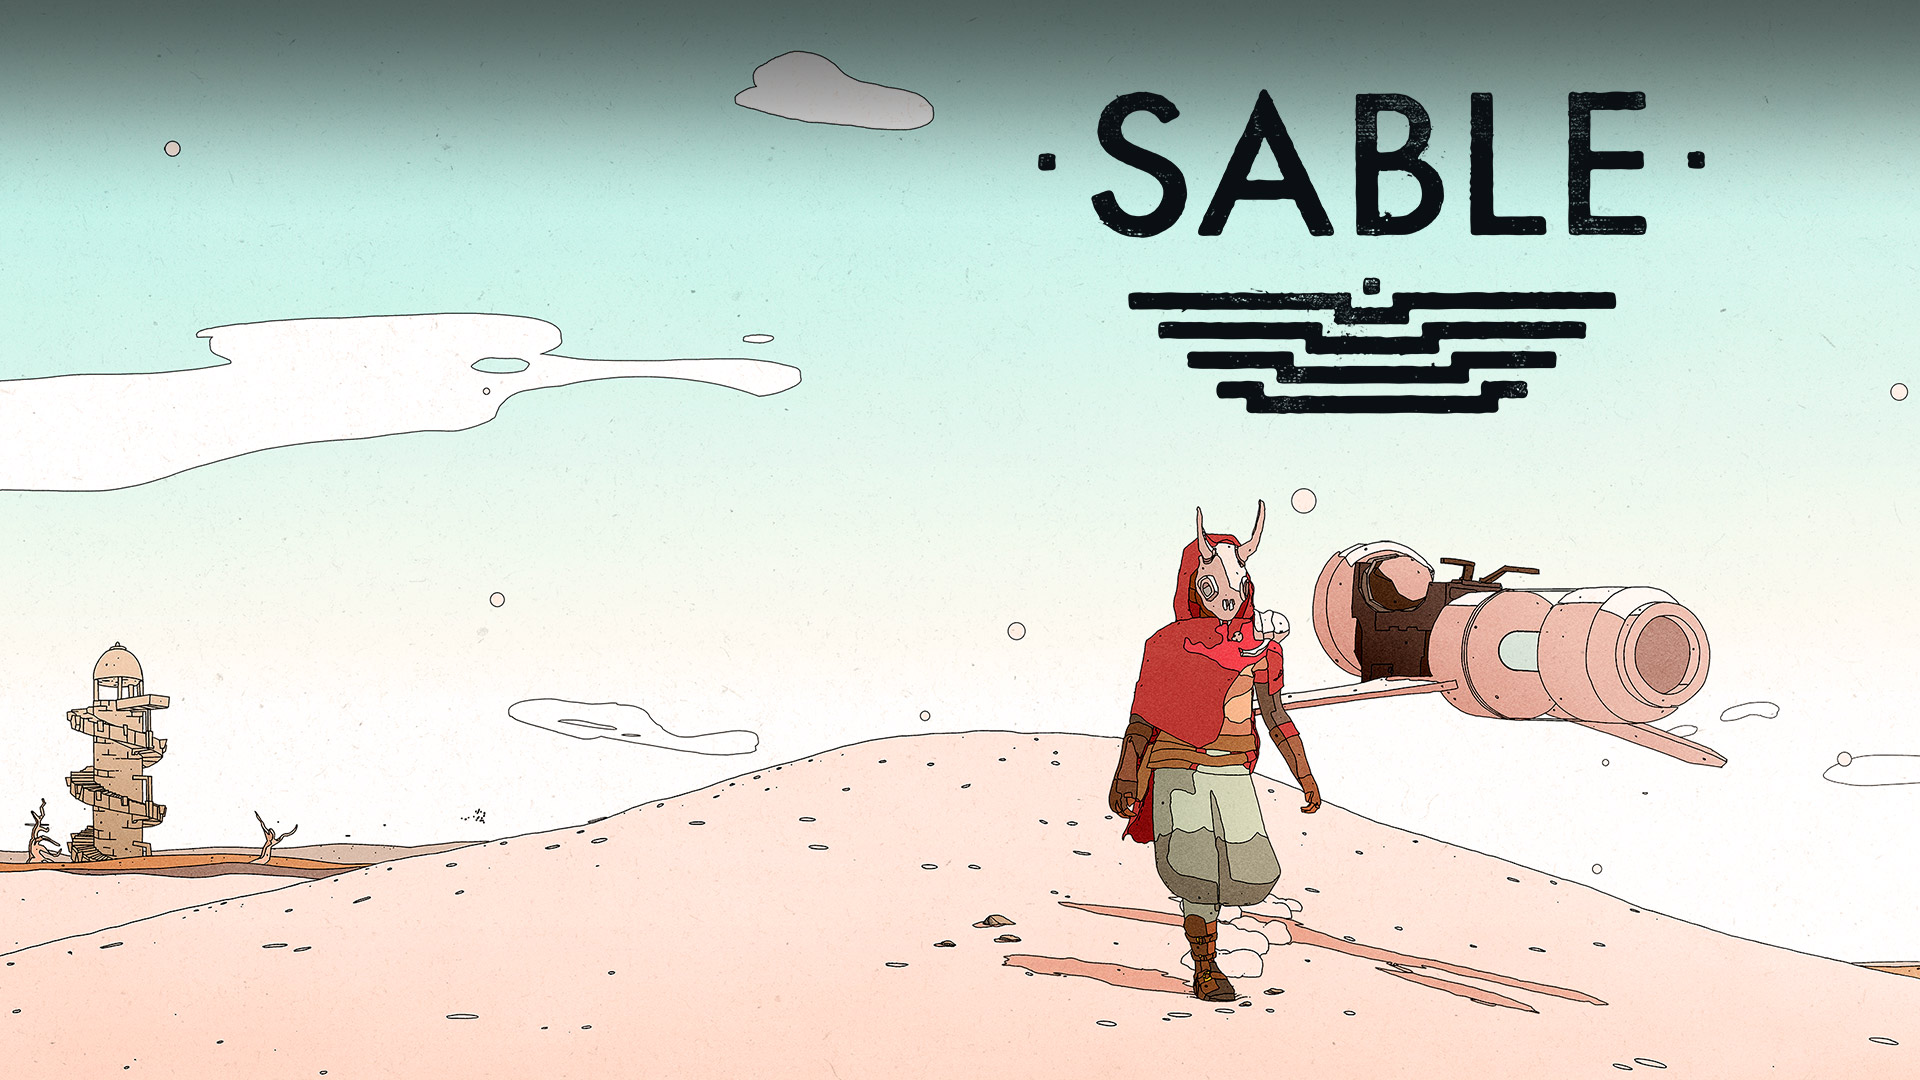 Sable-logo, Sable in de woestijn met een hoverbike